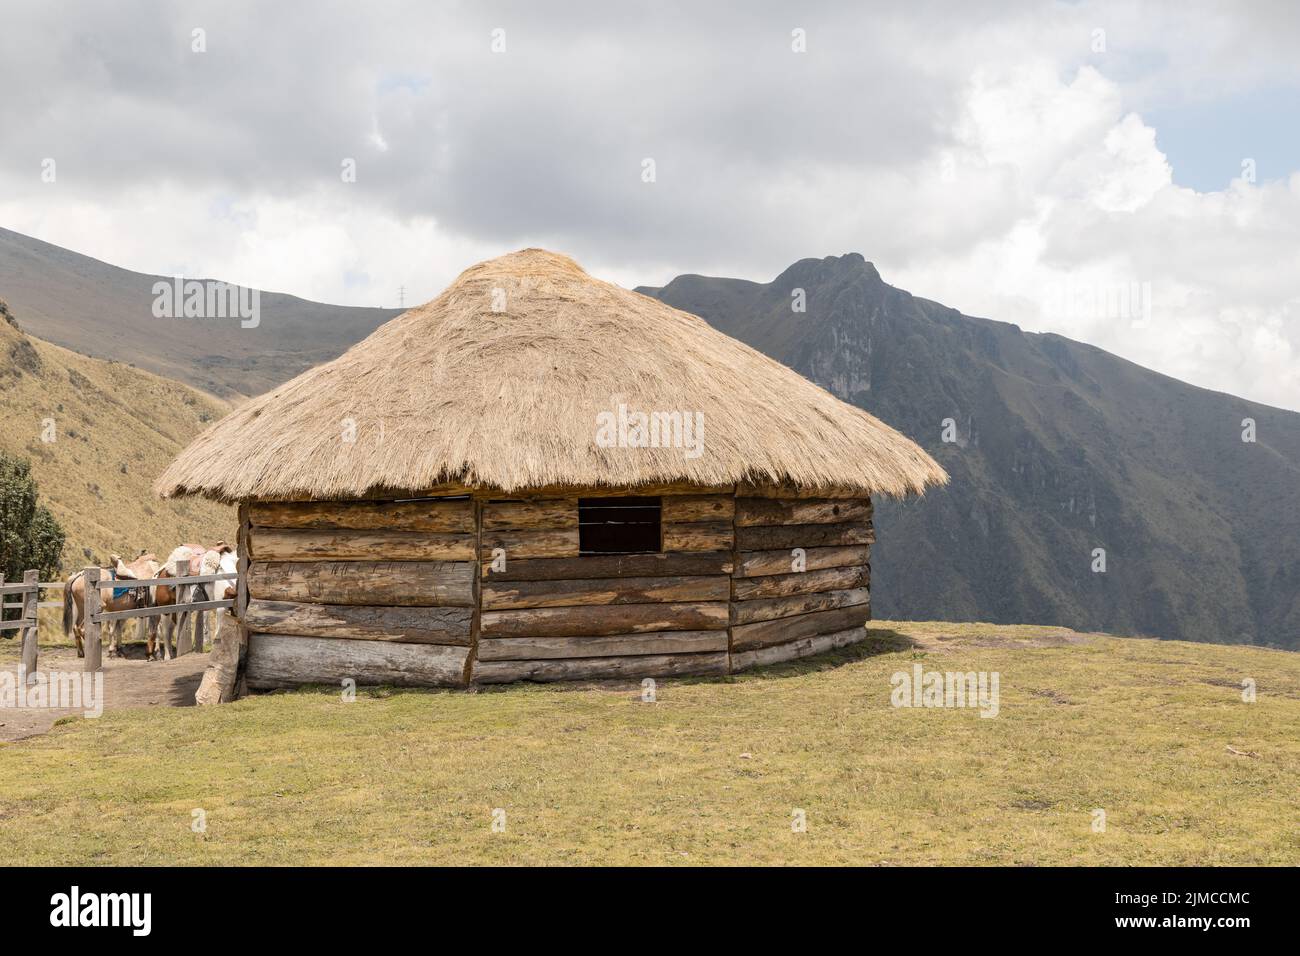 capanna rustica con tetto in paglia e struttura in legno, architettura tradizionale in campagna, paesaggio con cielo e nuvole in una giornata di sole Foto Stock